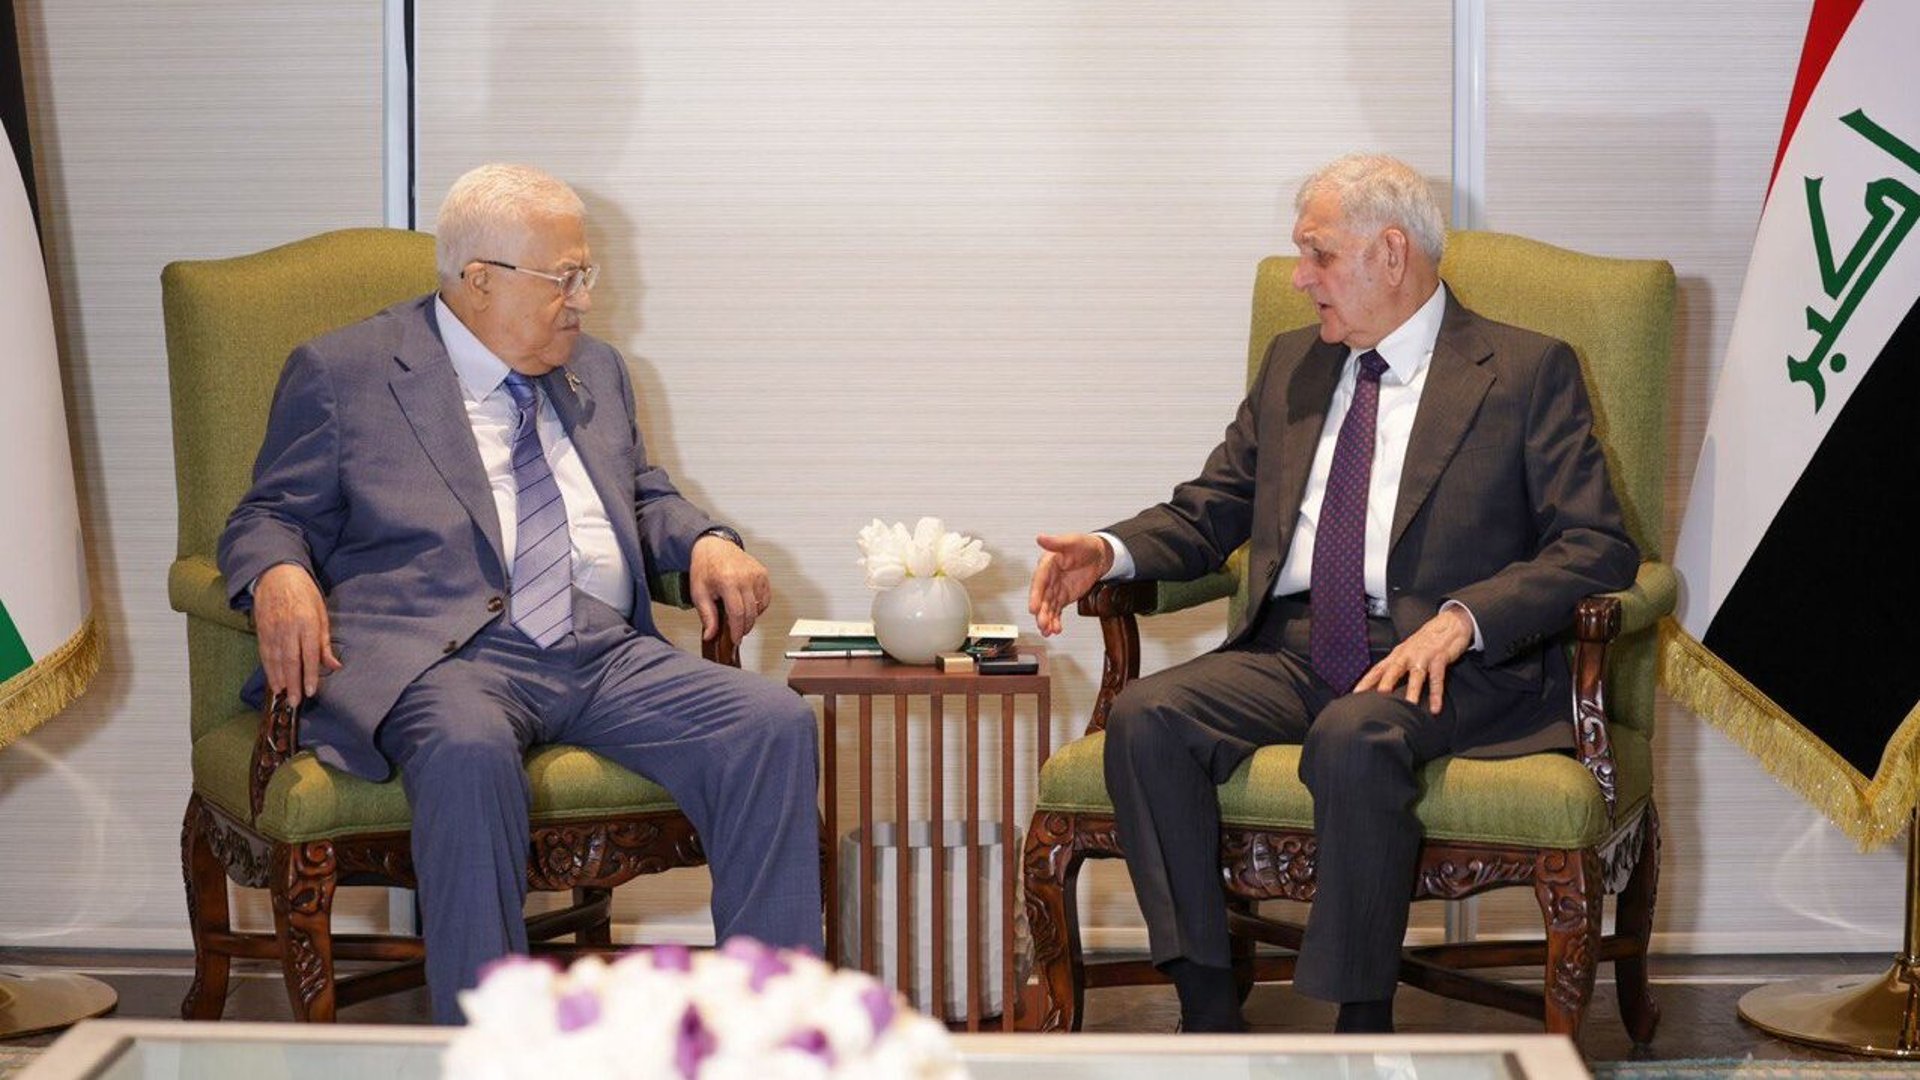 صور من لقاء الرئيس العراقي بنظيره الفلسطيني في المنامة